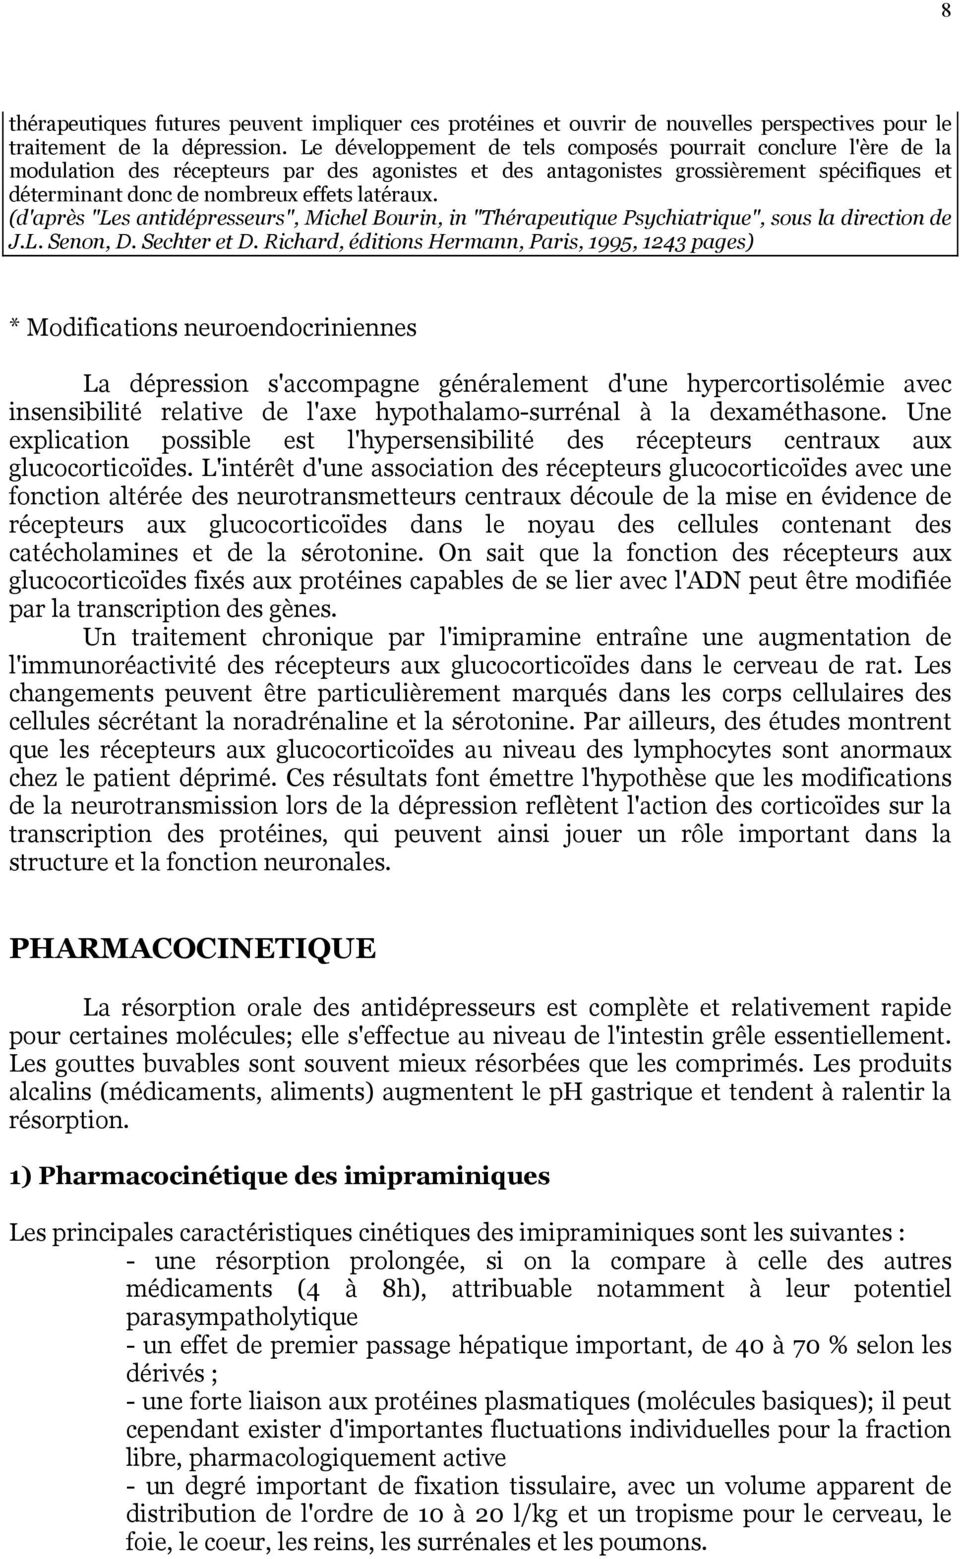 latéraux. (d'après "Les antidépresseurs", Michel Bourin, in "Thérapeutique Psychiatrique", sous la direction de J.L. Senon, D. Sechter et D.